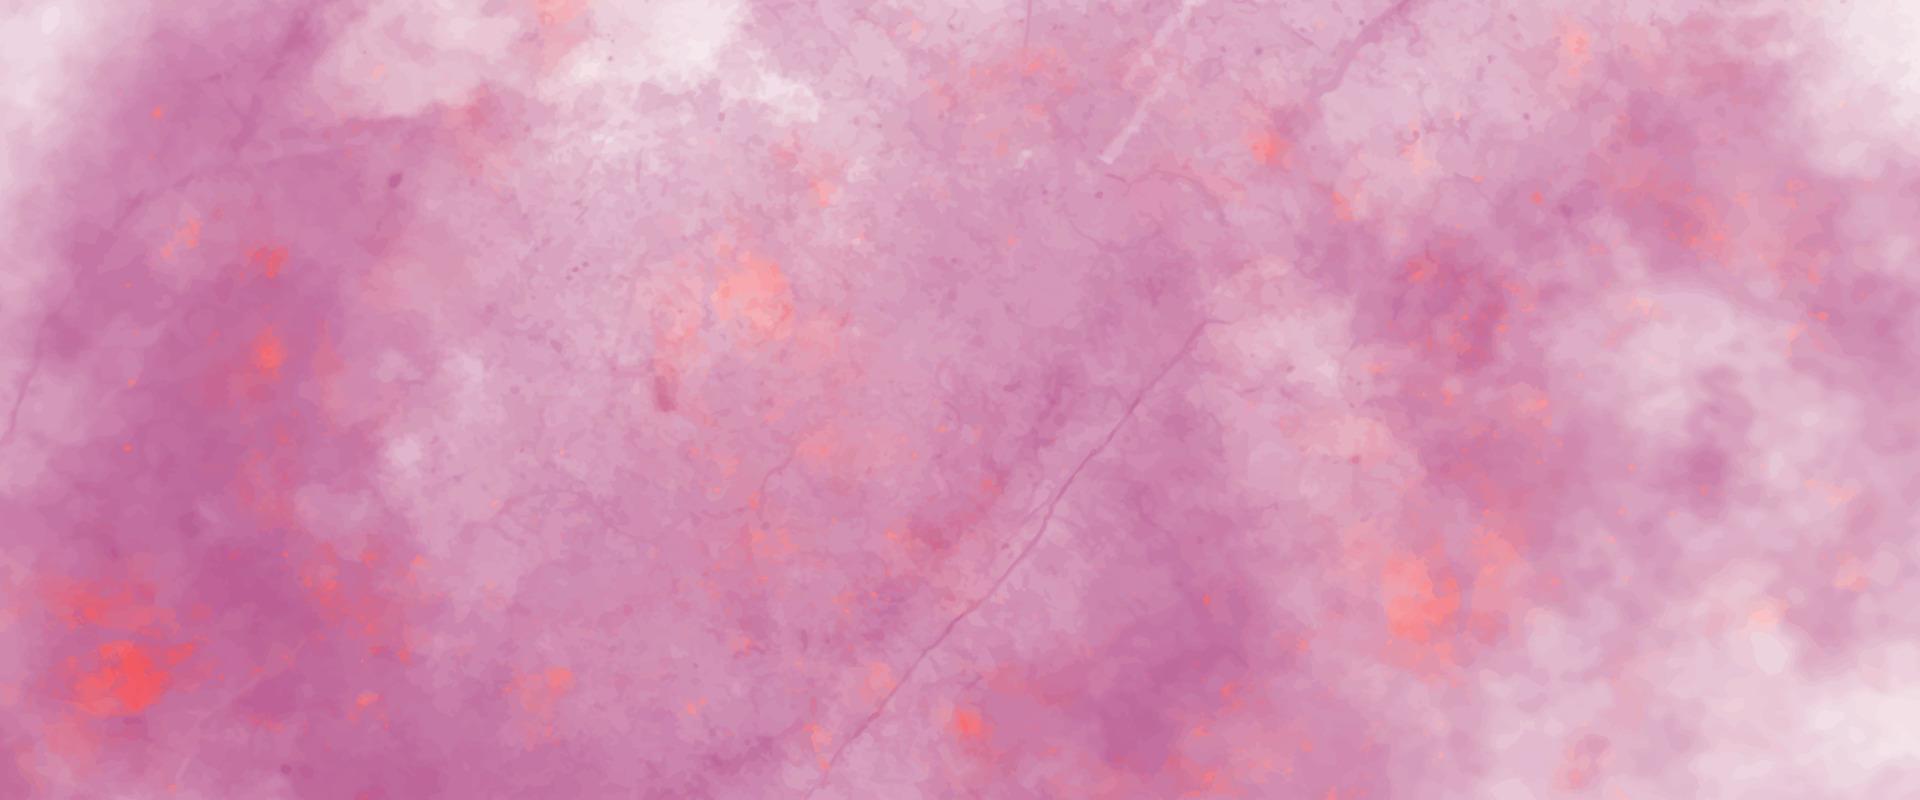 abstrakt kosmisk fuchsia neon papper texturerad akvarell duk för modern kreativ design. ljus ljus rosa bläck vattenfärg på svart bakgrund. magenta papper textur vatten Färg. vektor